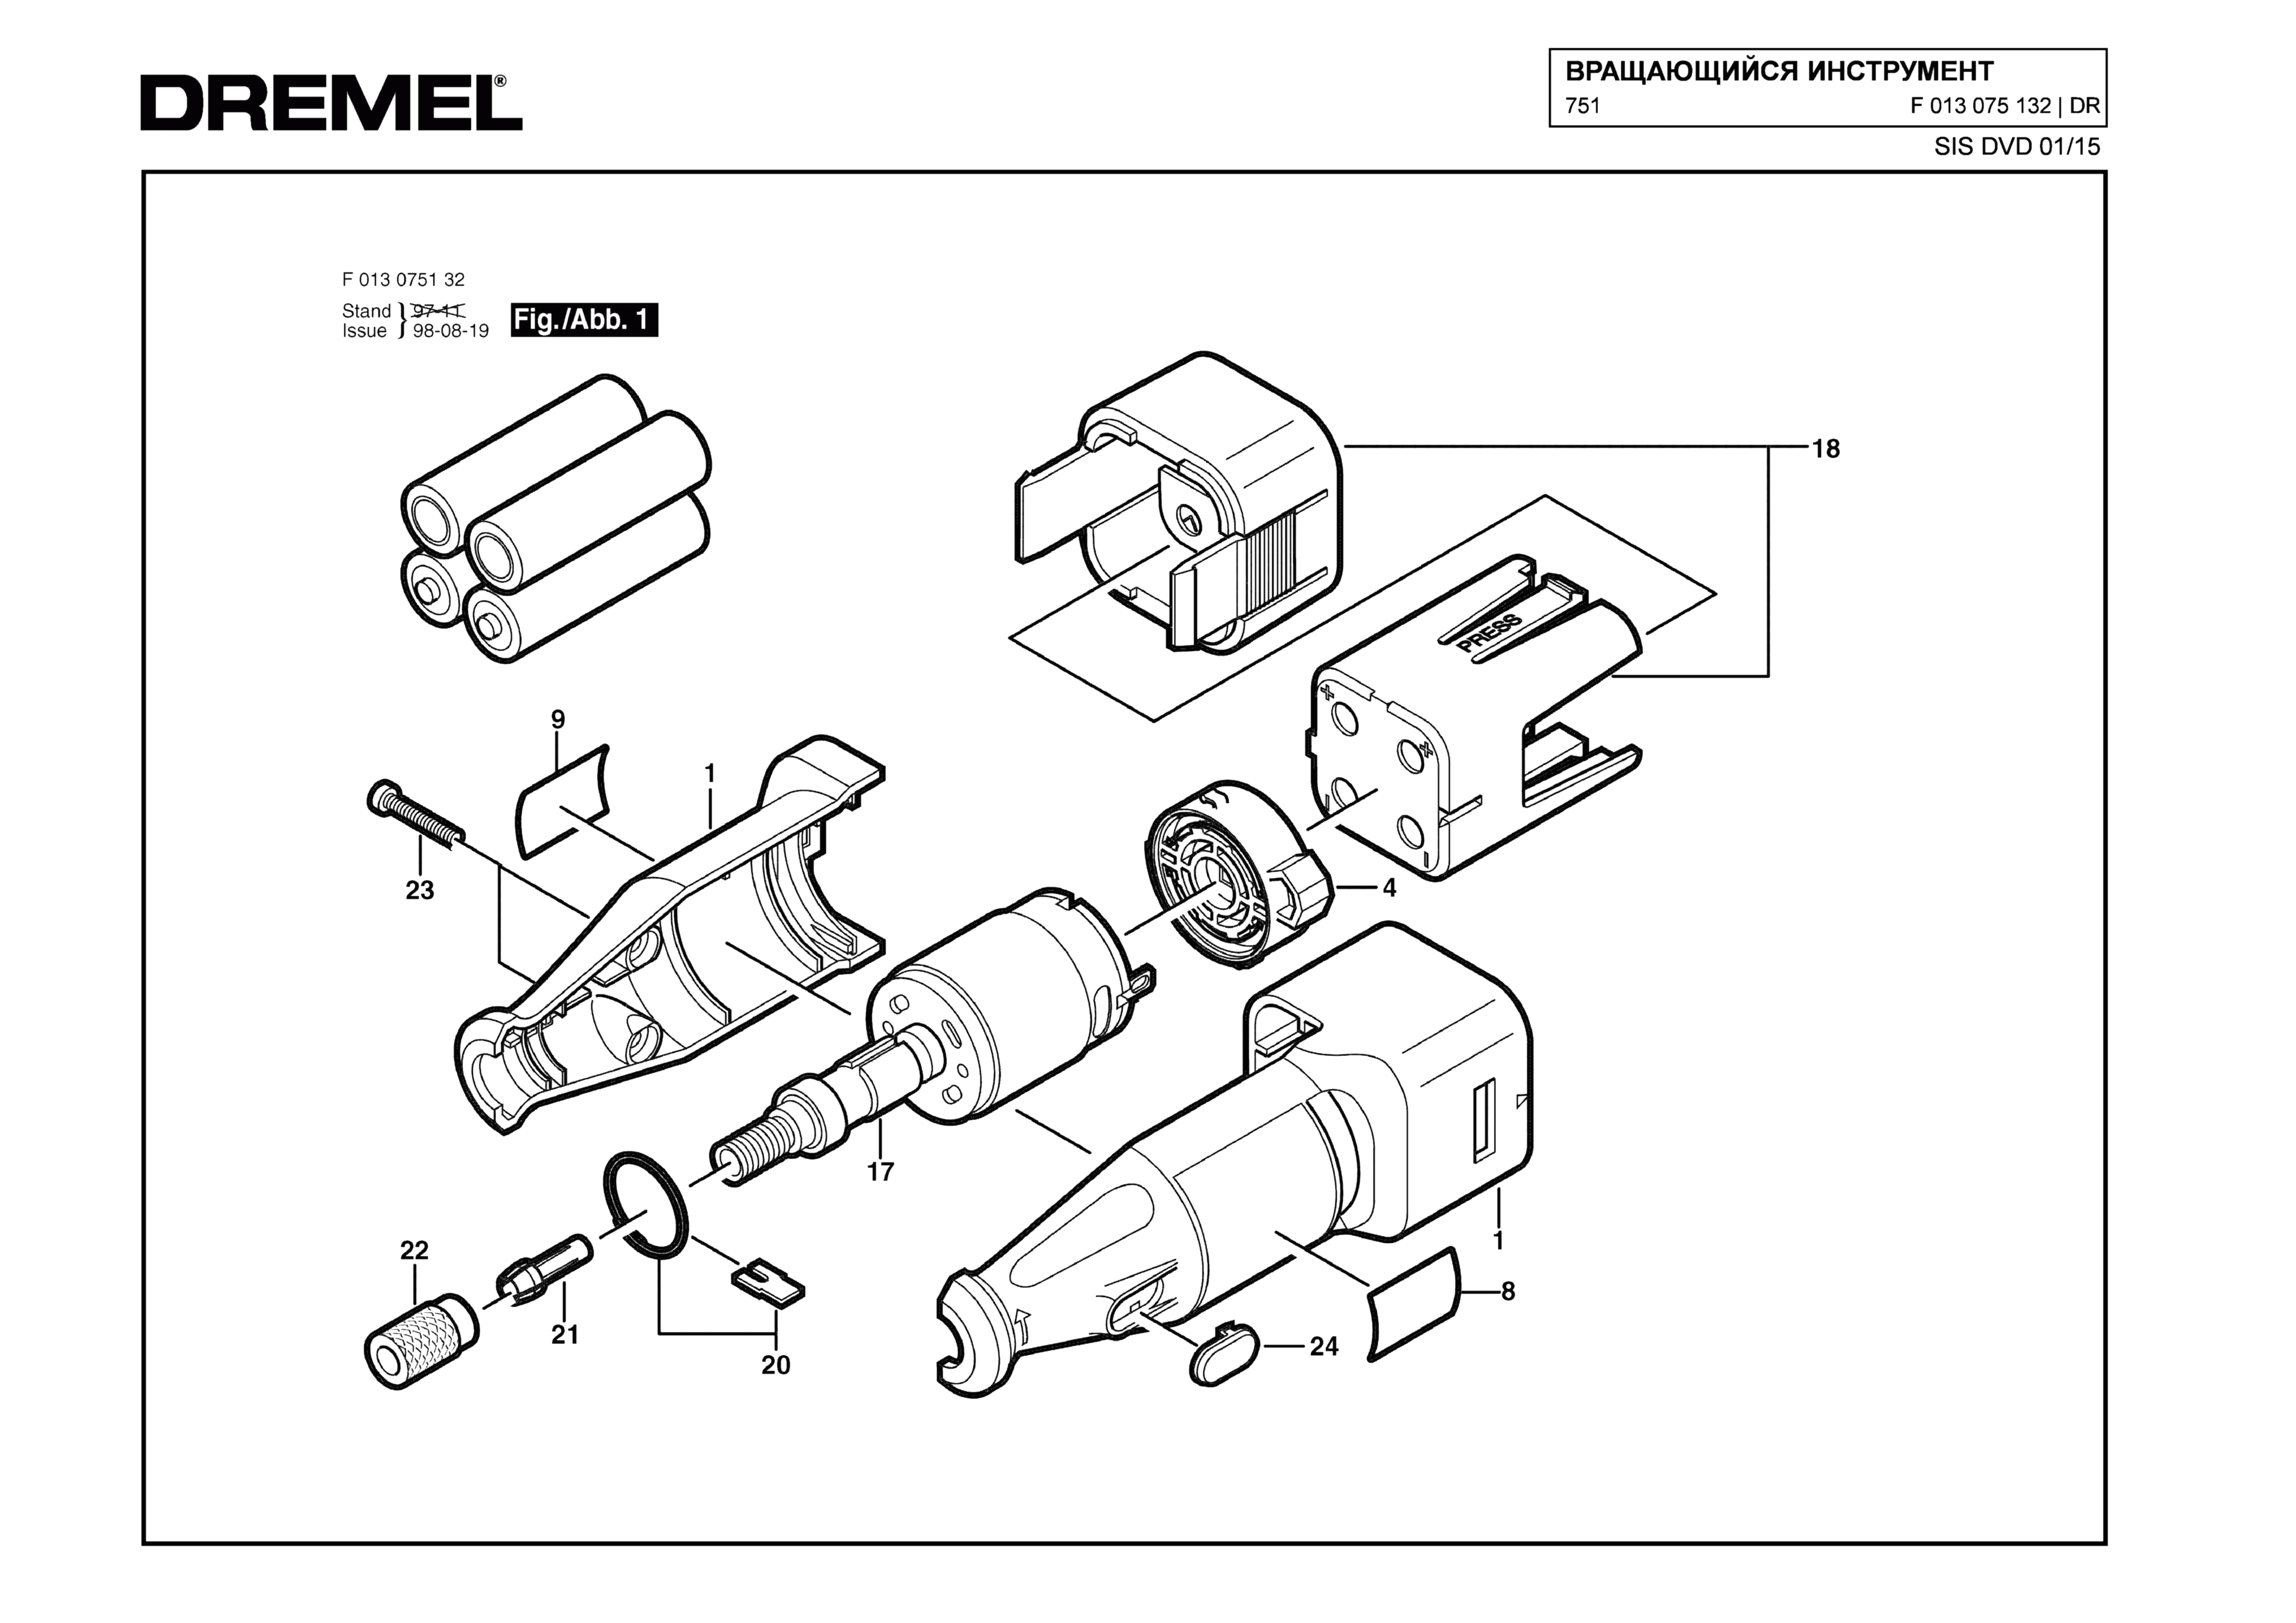 Шлифовальная машина Dremel 751 (ТИП F013075132)